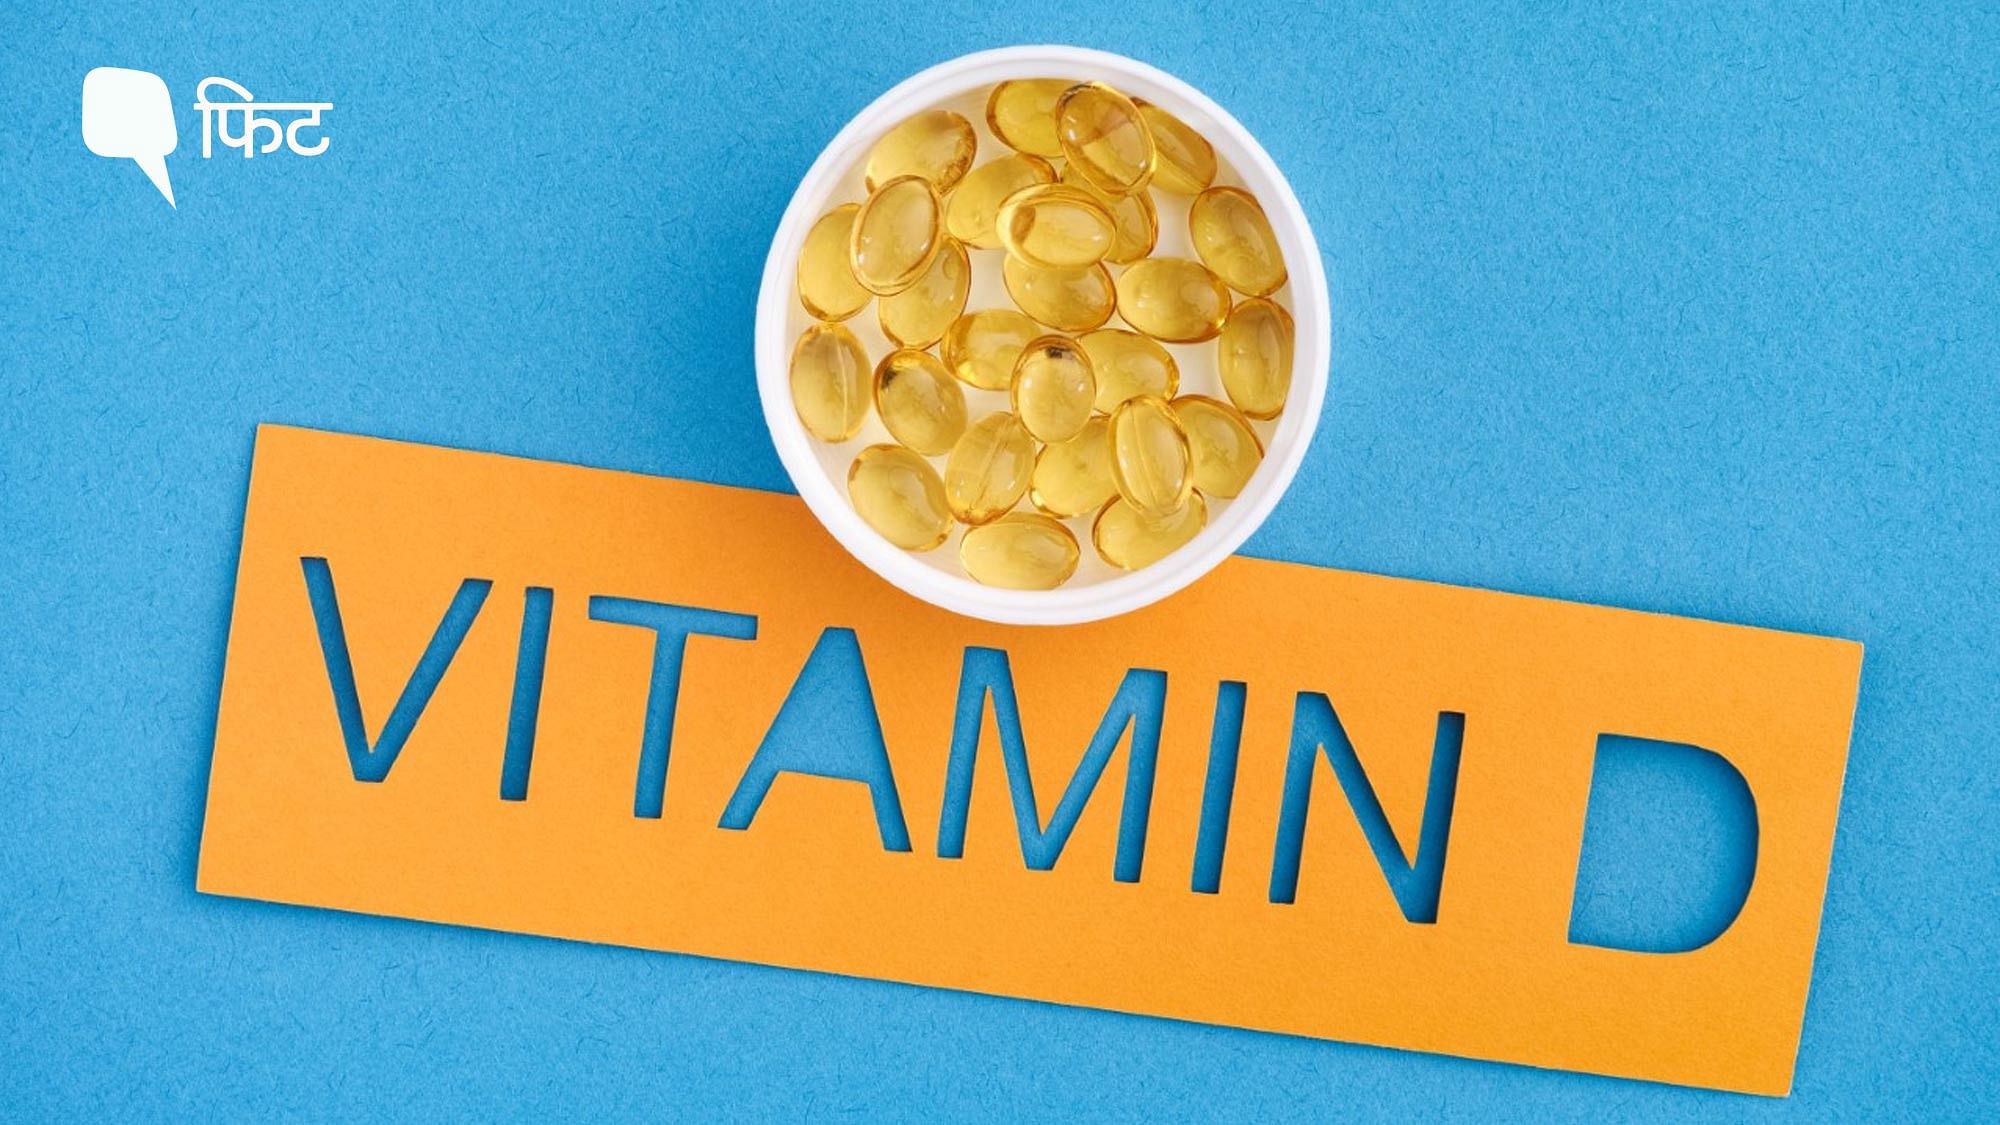 <div class="paragraphs"><p>Vitamin D Overdose: विटामिन डी का शरीर में अधिक हो जाना एक बड़ी समस्या है. जानें लक्षण</p></div>